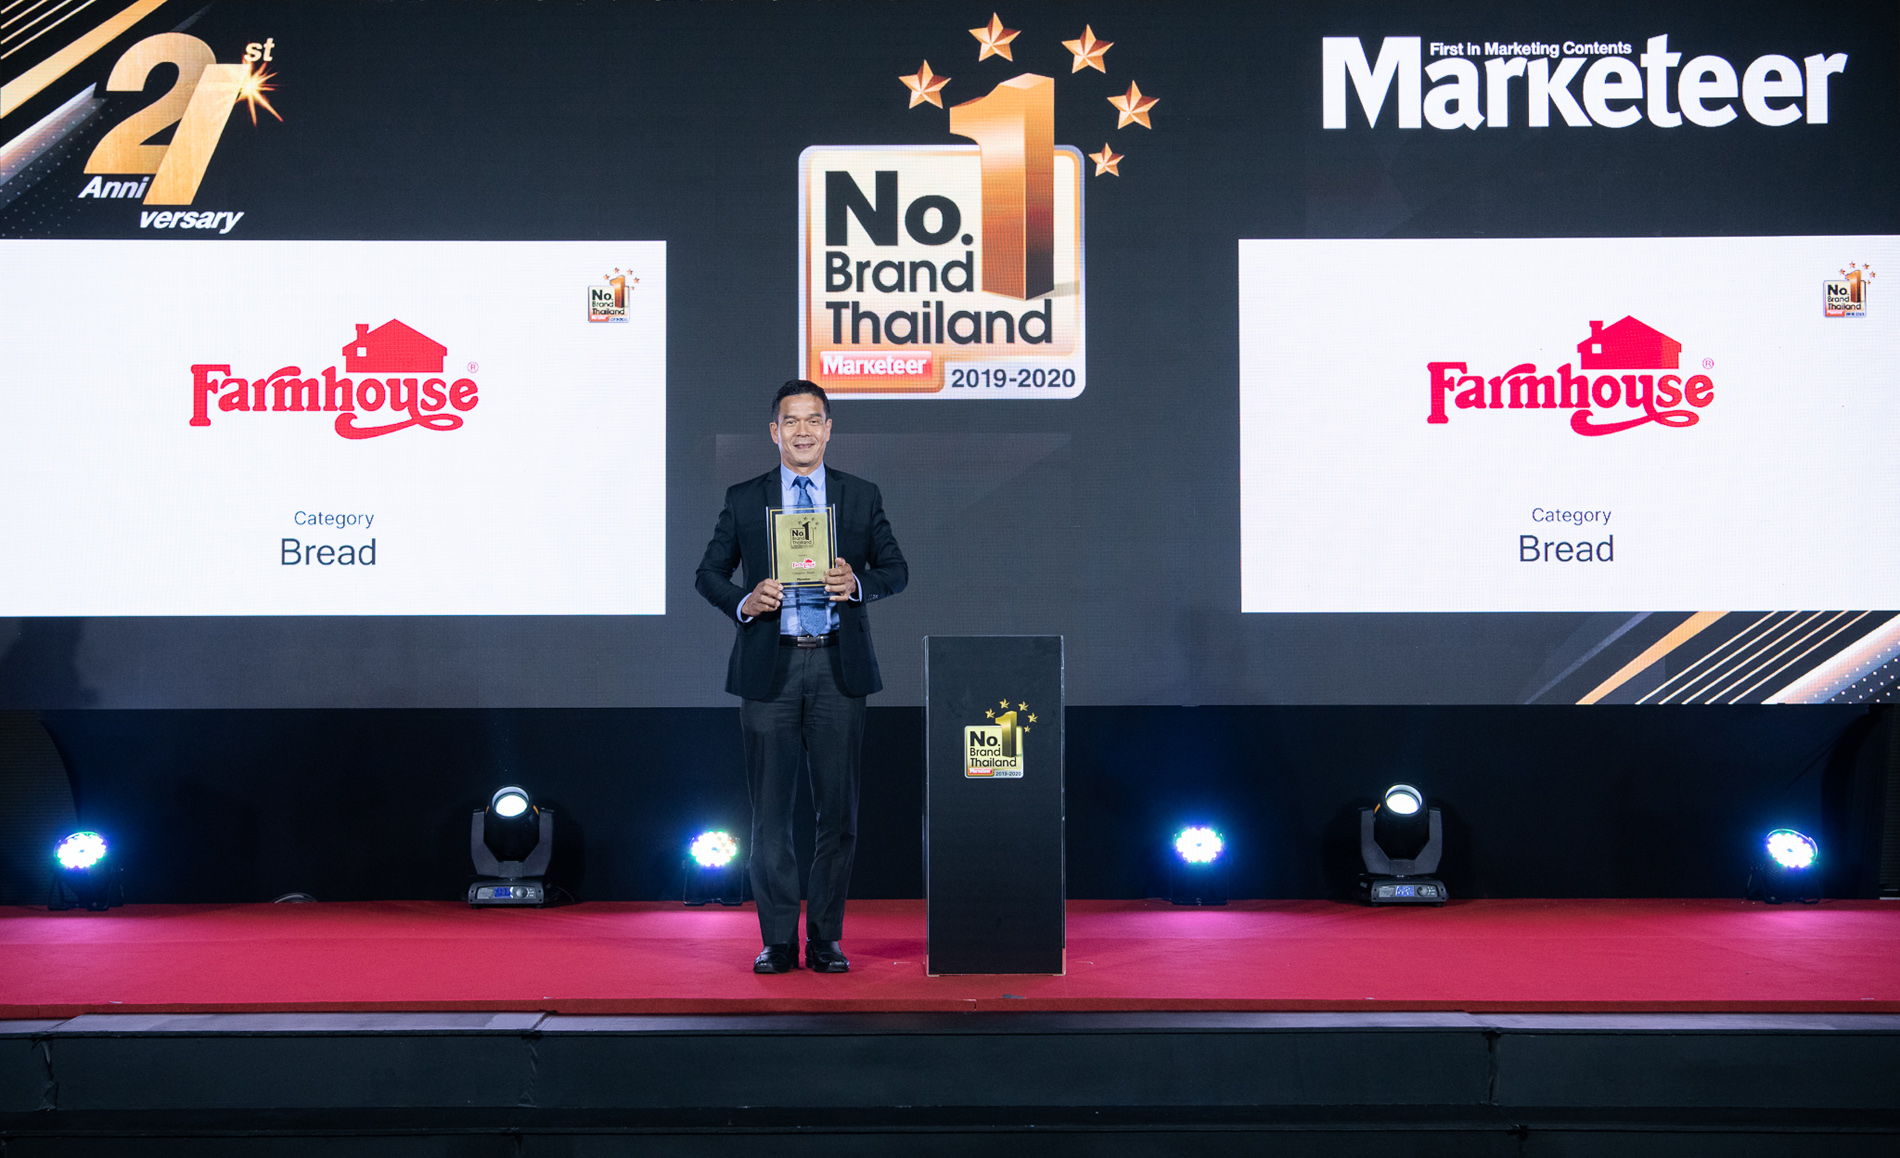 ฟาร์มเฮ้าส์ คว้ารางวัล No.1 Brand Thailand 2019-2020 ครองใจผู้บริโภคต่อเนื่อง 3 ปีซ้อน